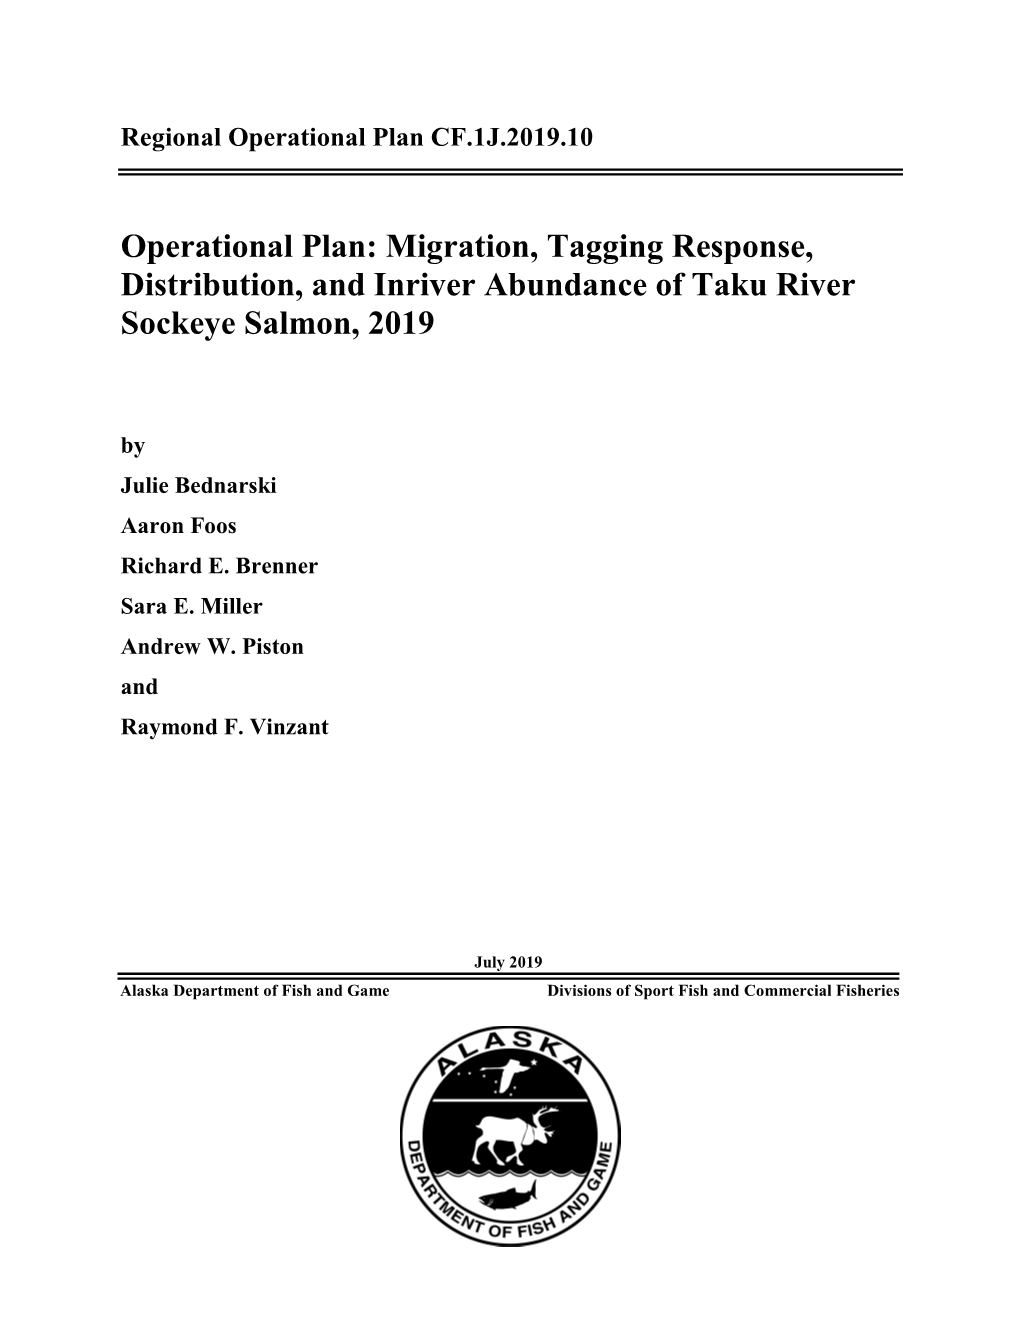 Operational Plan: Migration, Tagging Response, Distribution, and Inriver Abundance of Taku River Sockeye Salmon